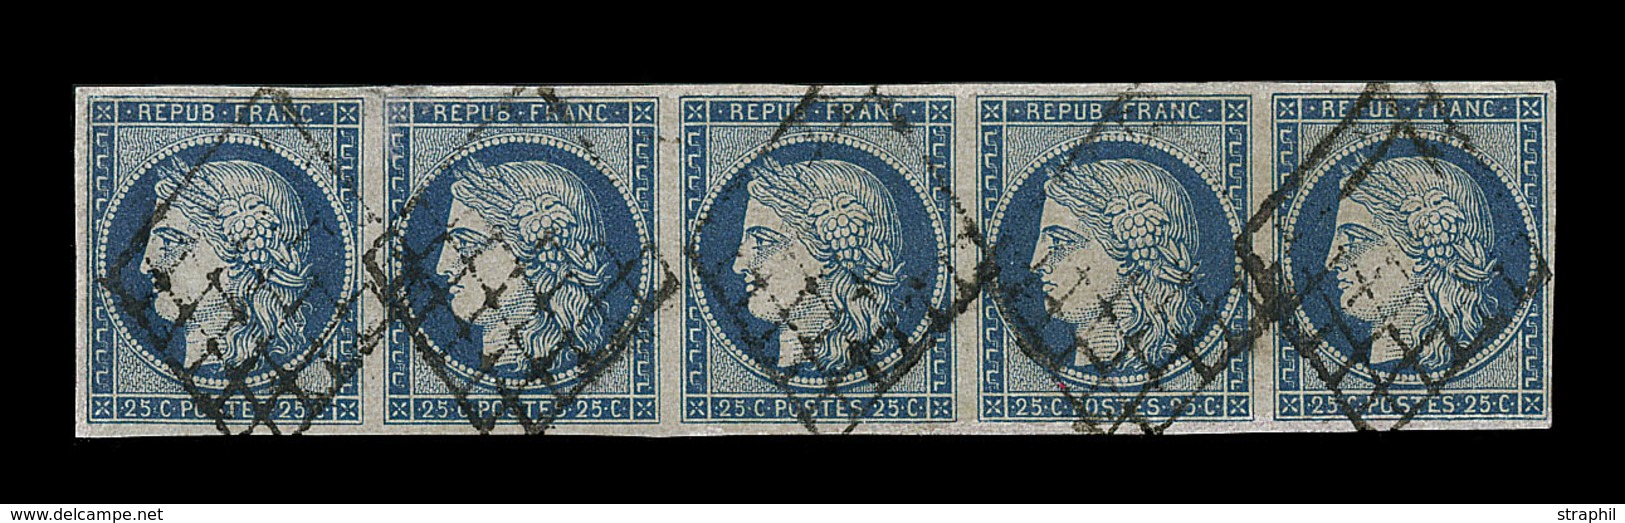 O EMISSION CERES 1849 - O - N°4 - 25c Bleu - Bde De 5 - Qualité Exceptionnelle - Pièce De Luxe - TB - 1849-1850 Ceres